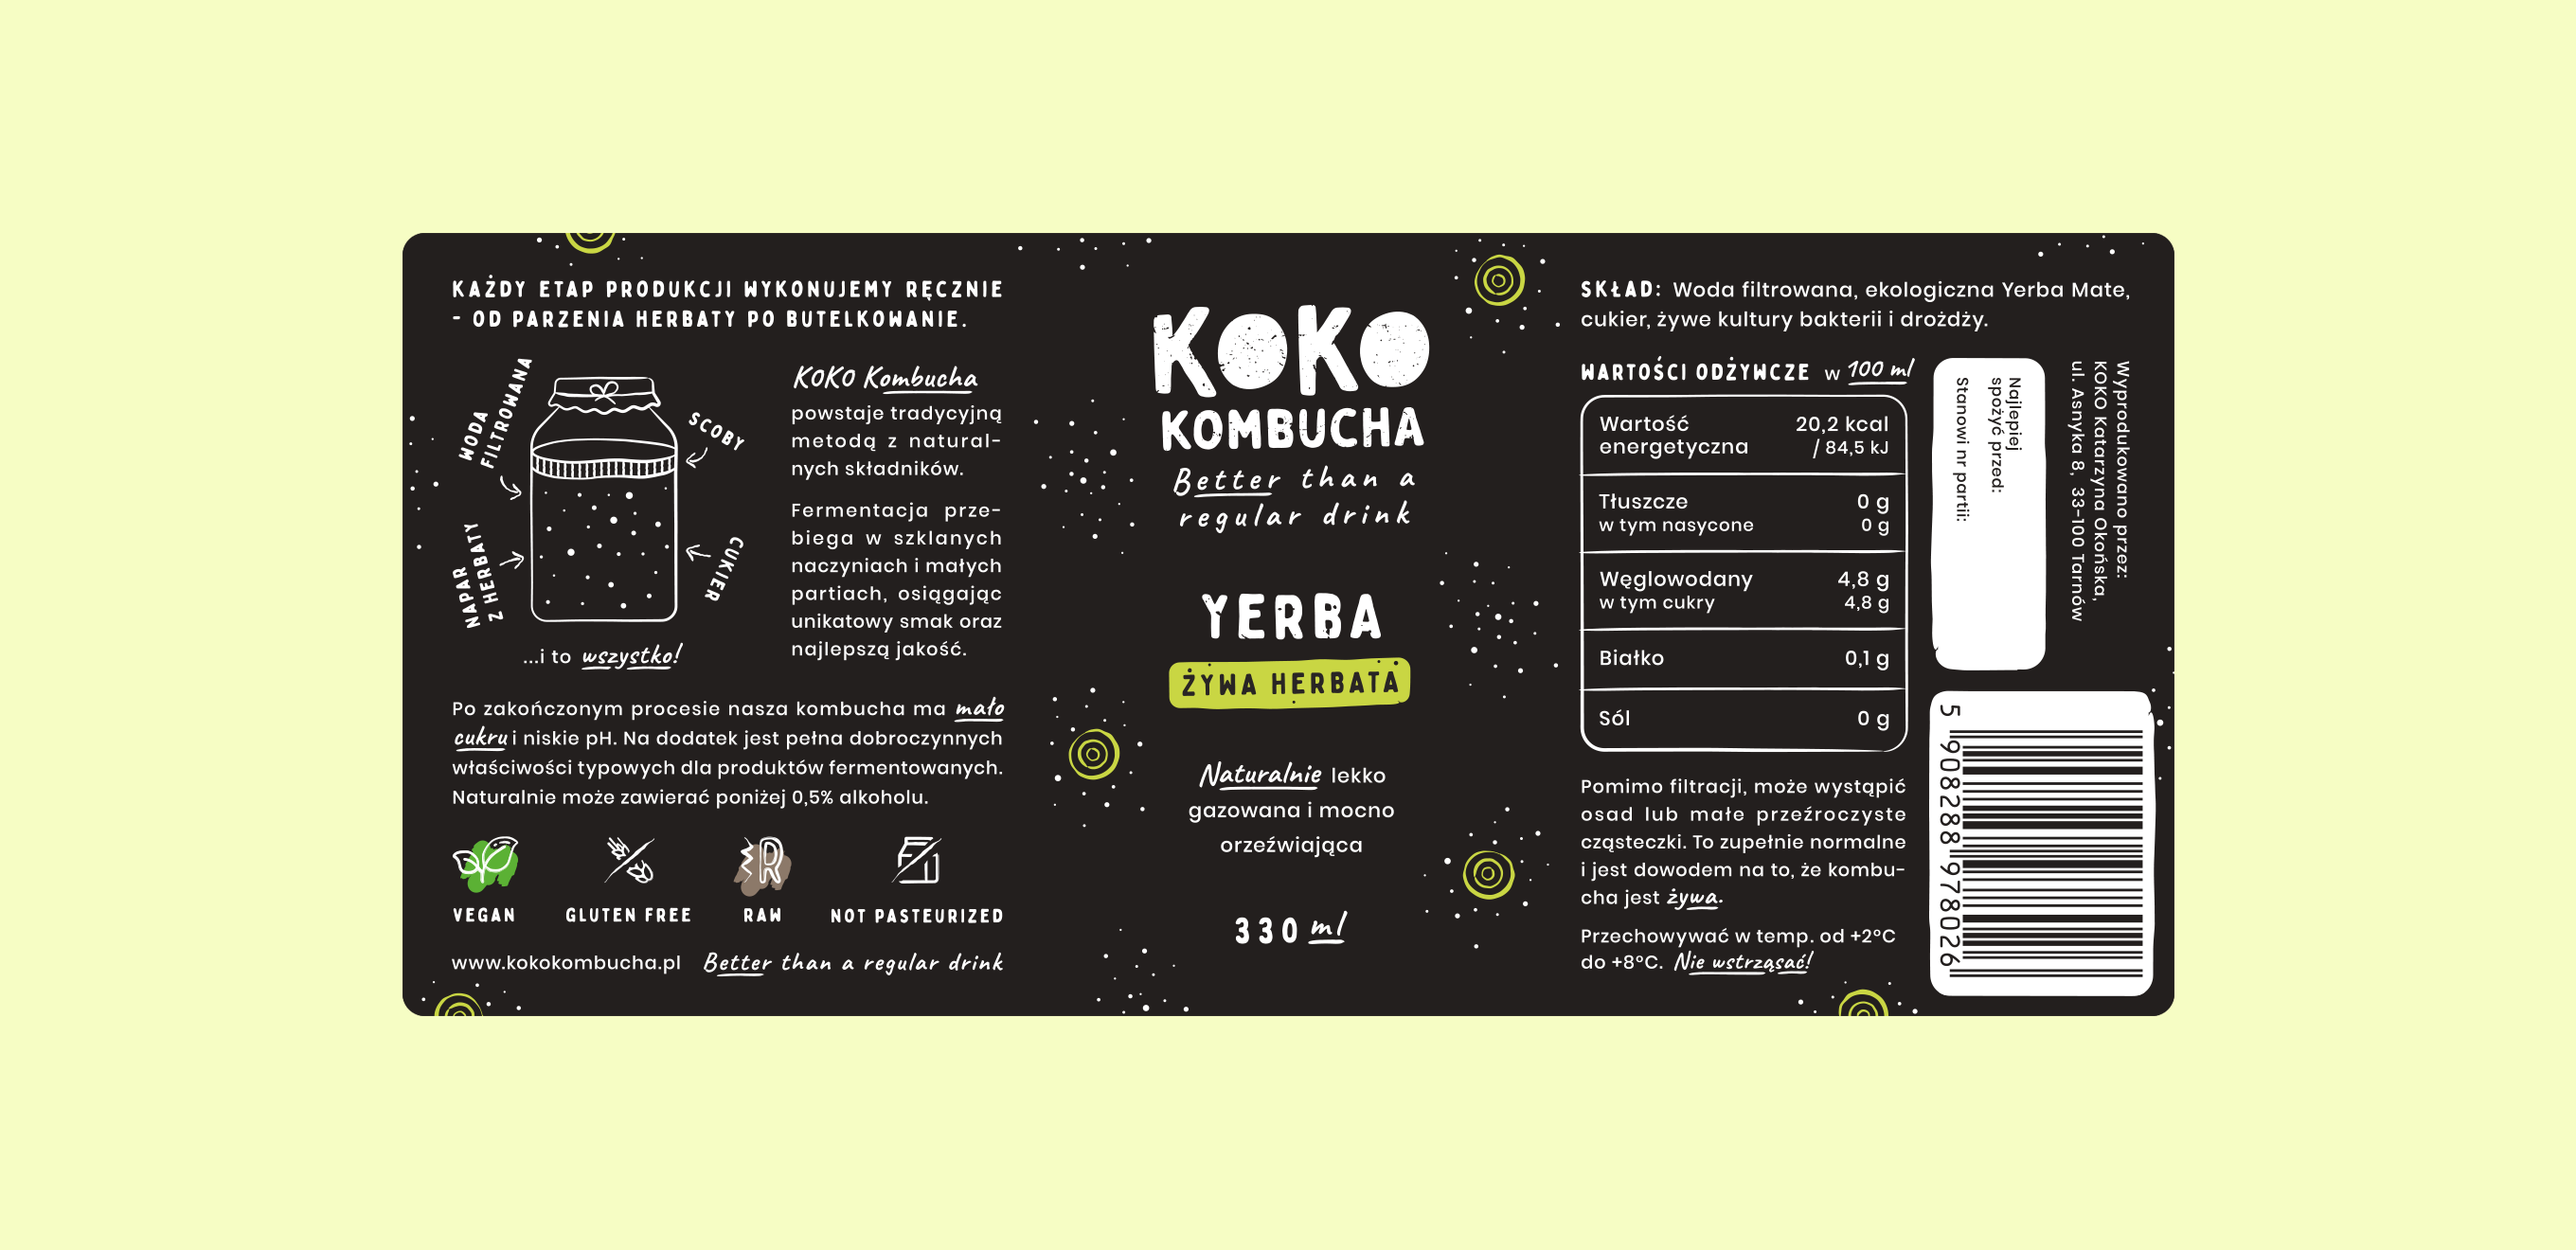 KOKO Kombucha - Etykieta Yerba